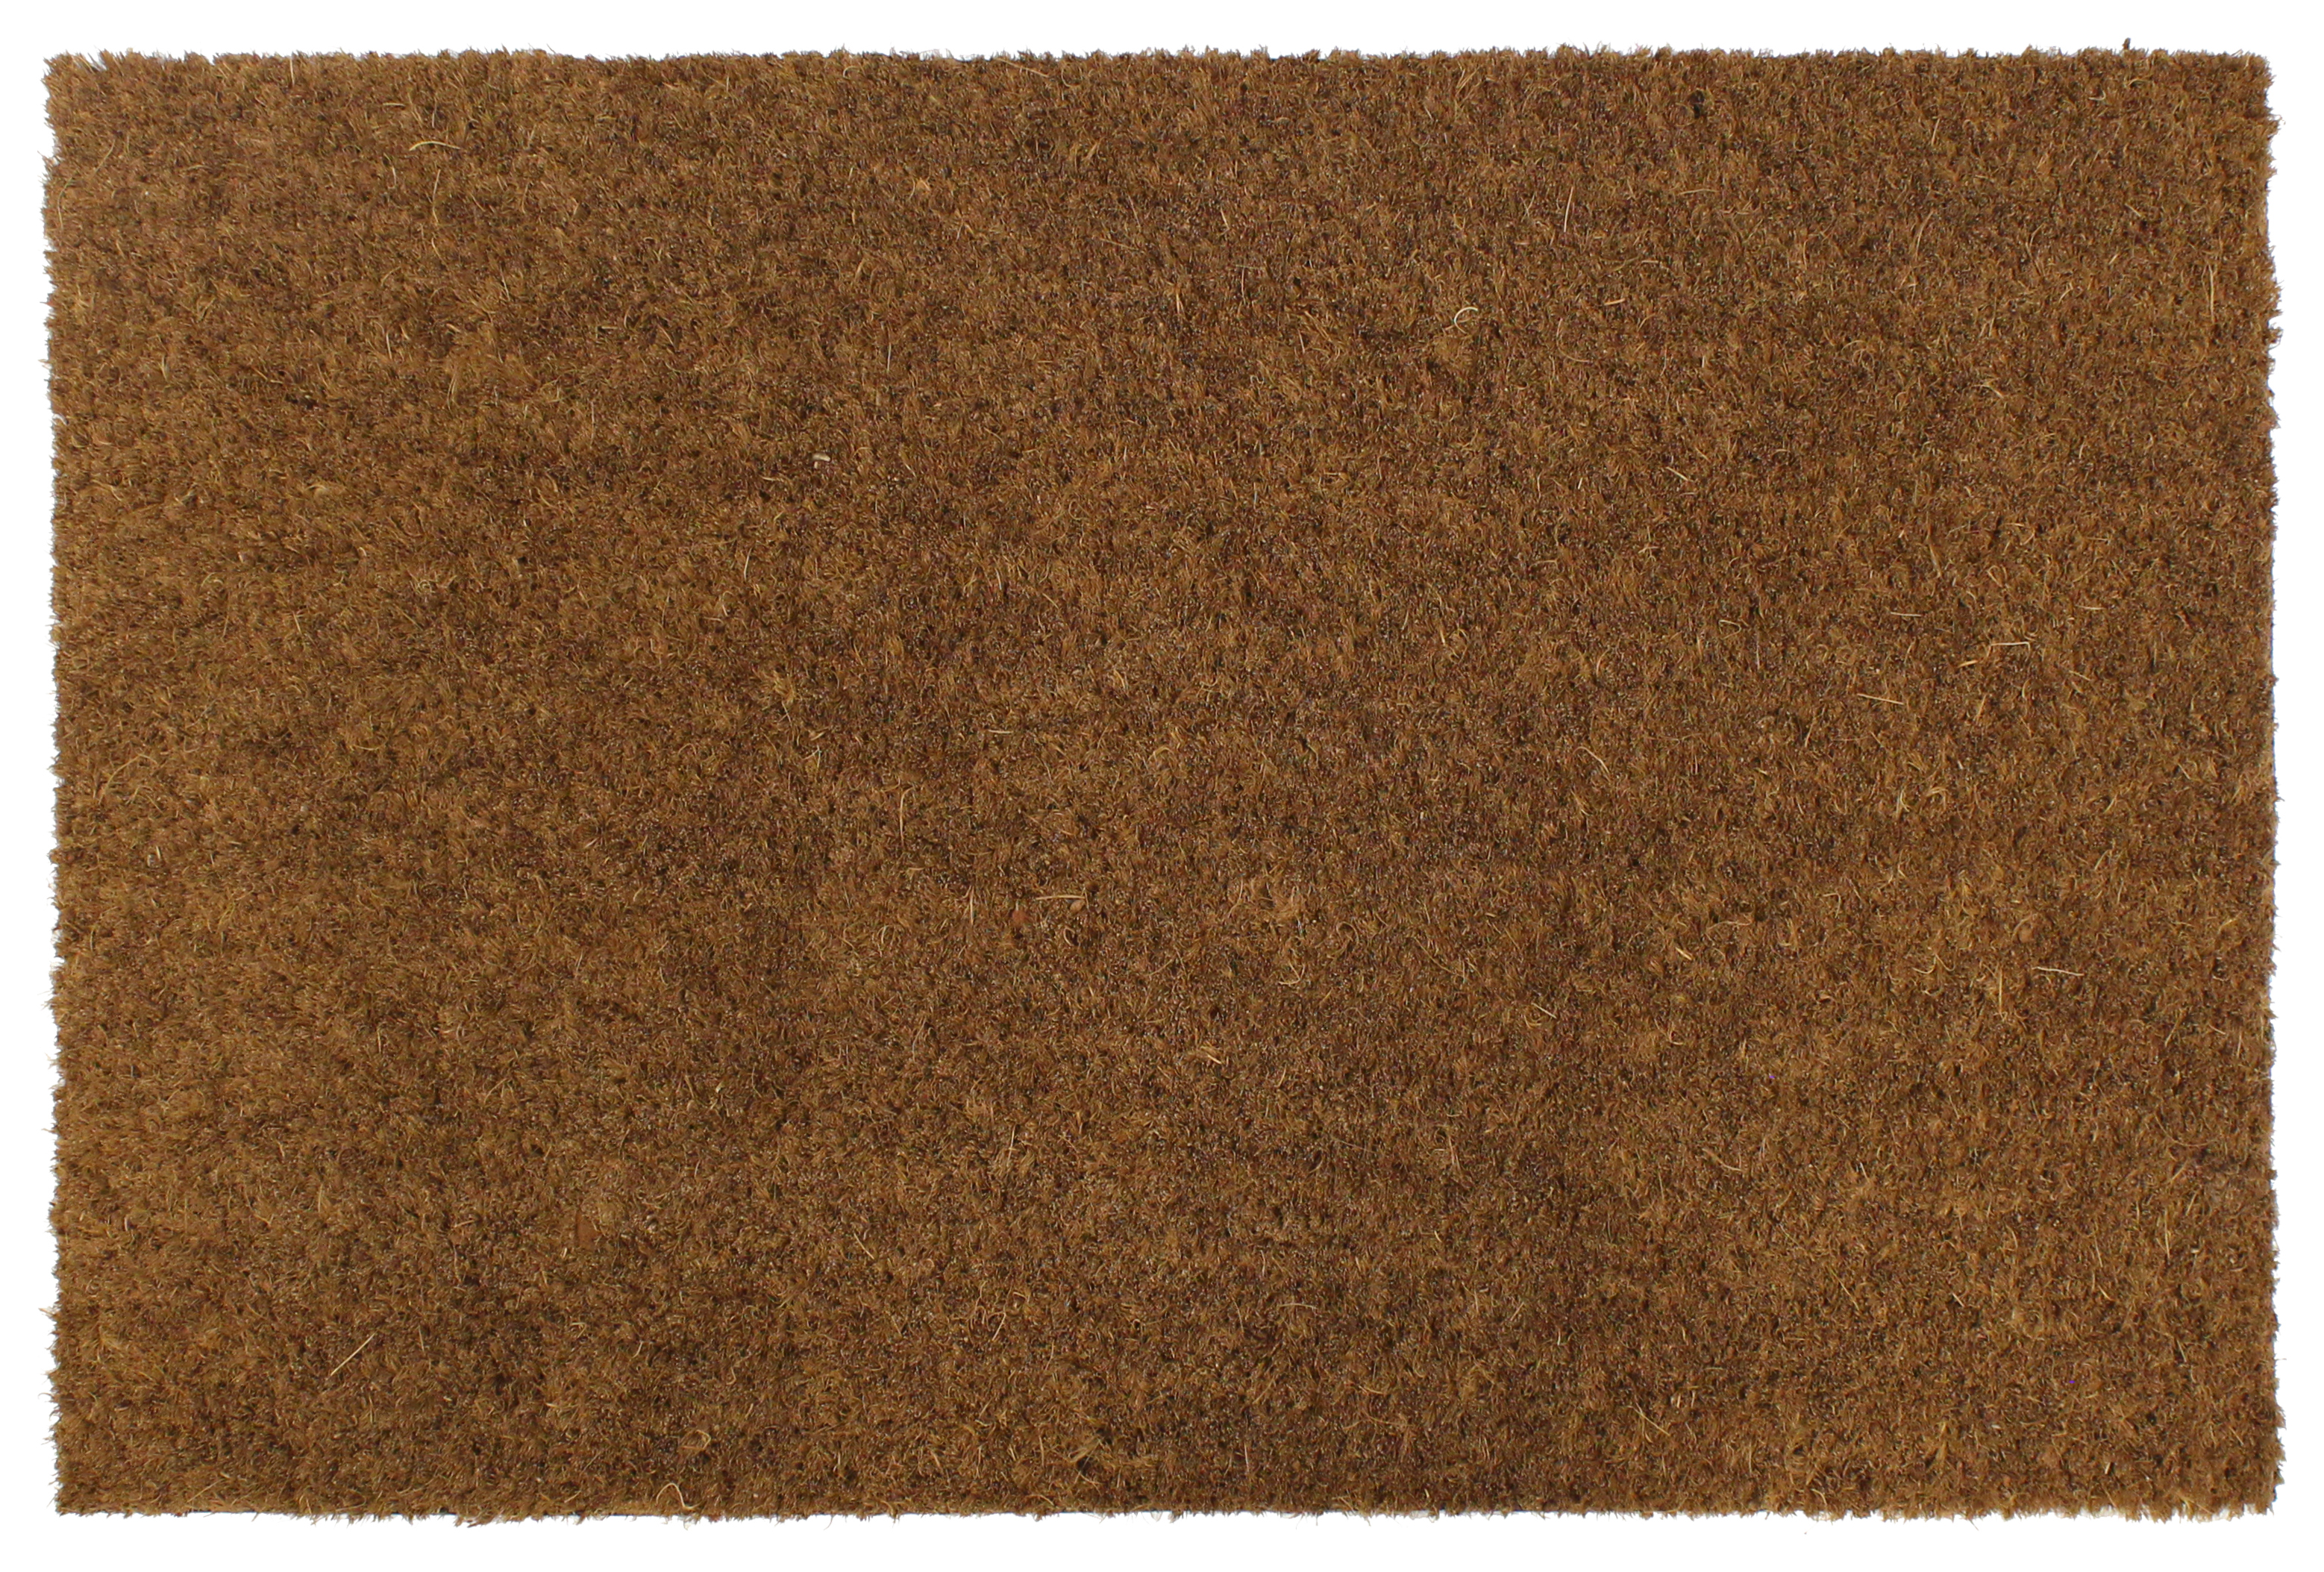 Image of Plain PVC Coir Doormat - 40 x 60cm